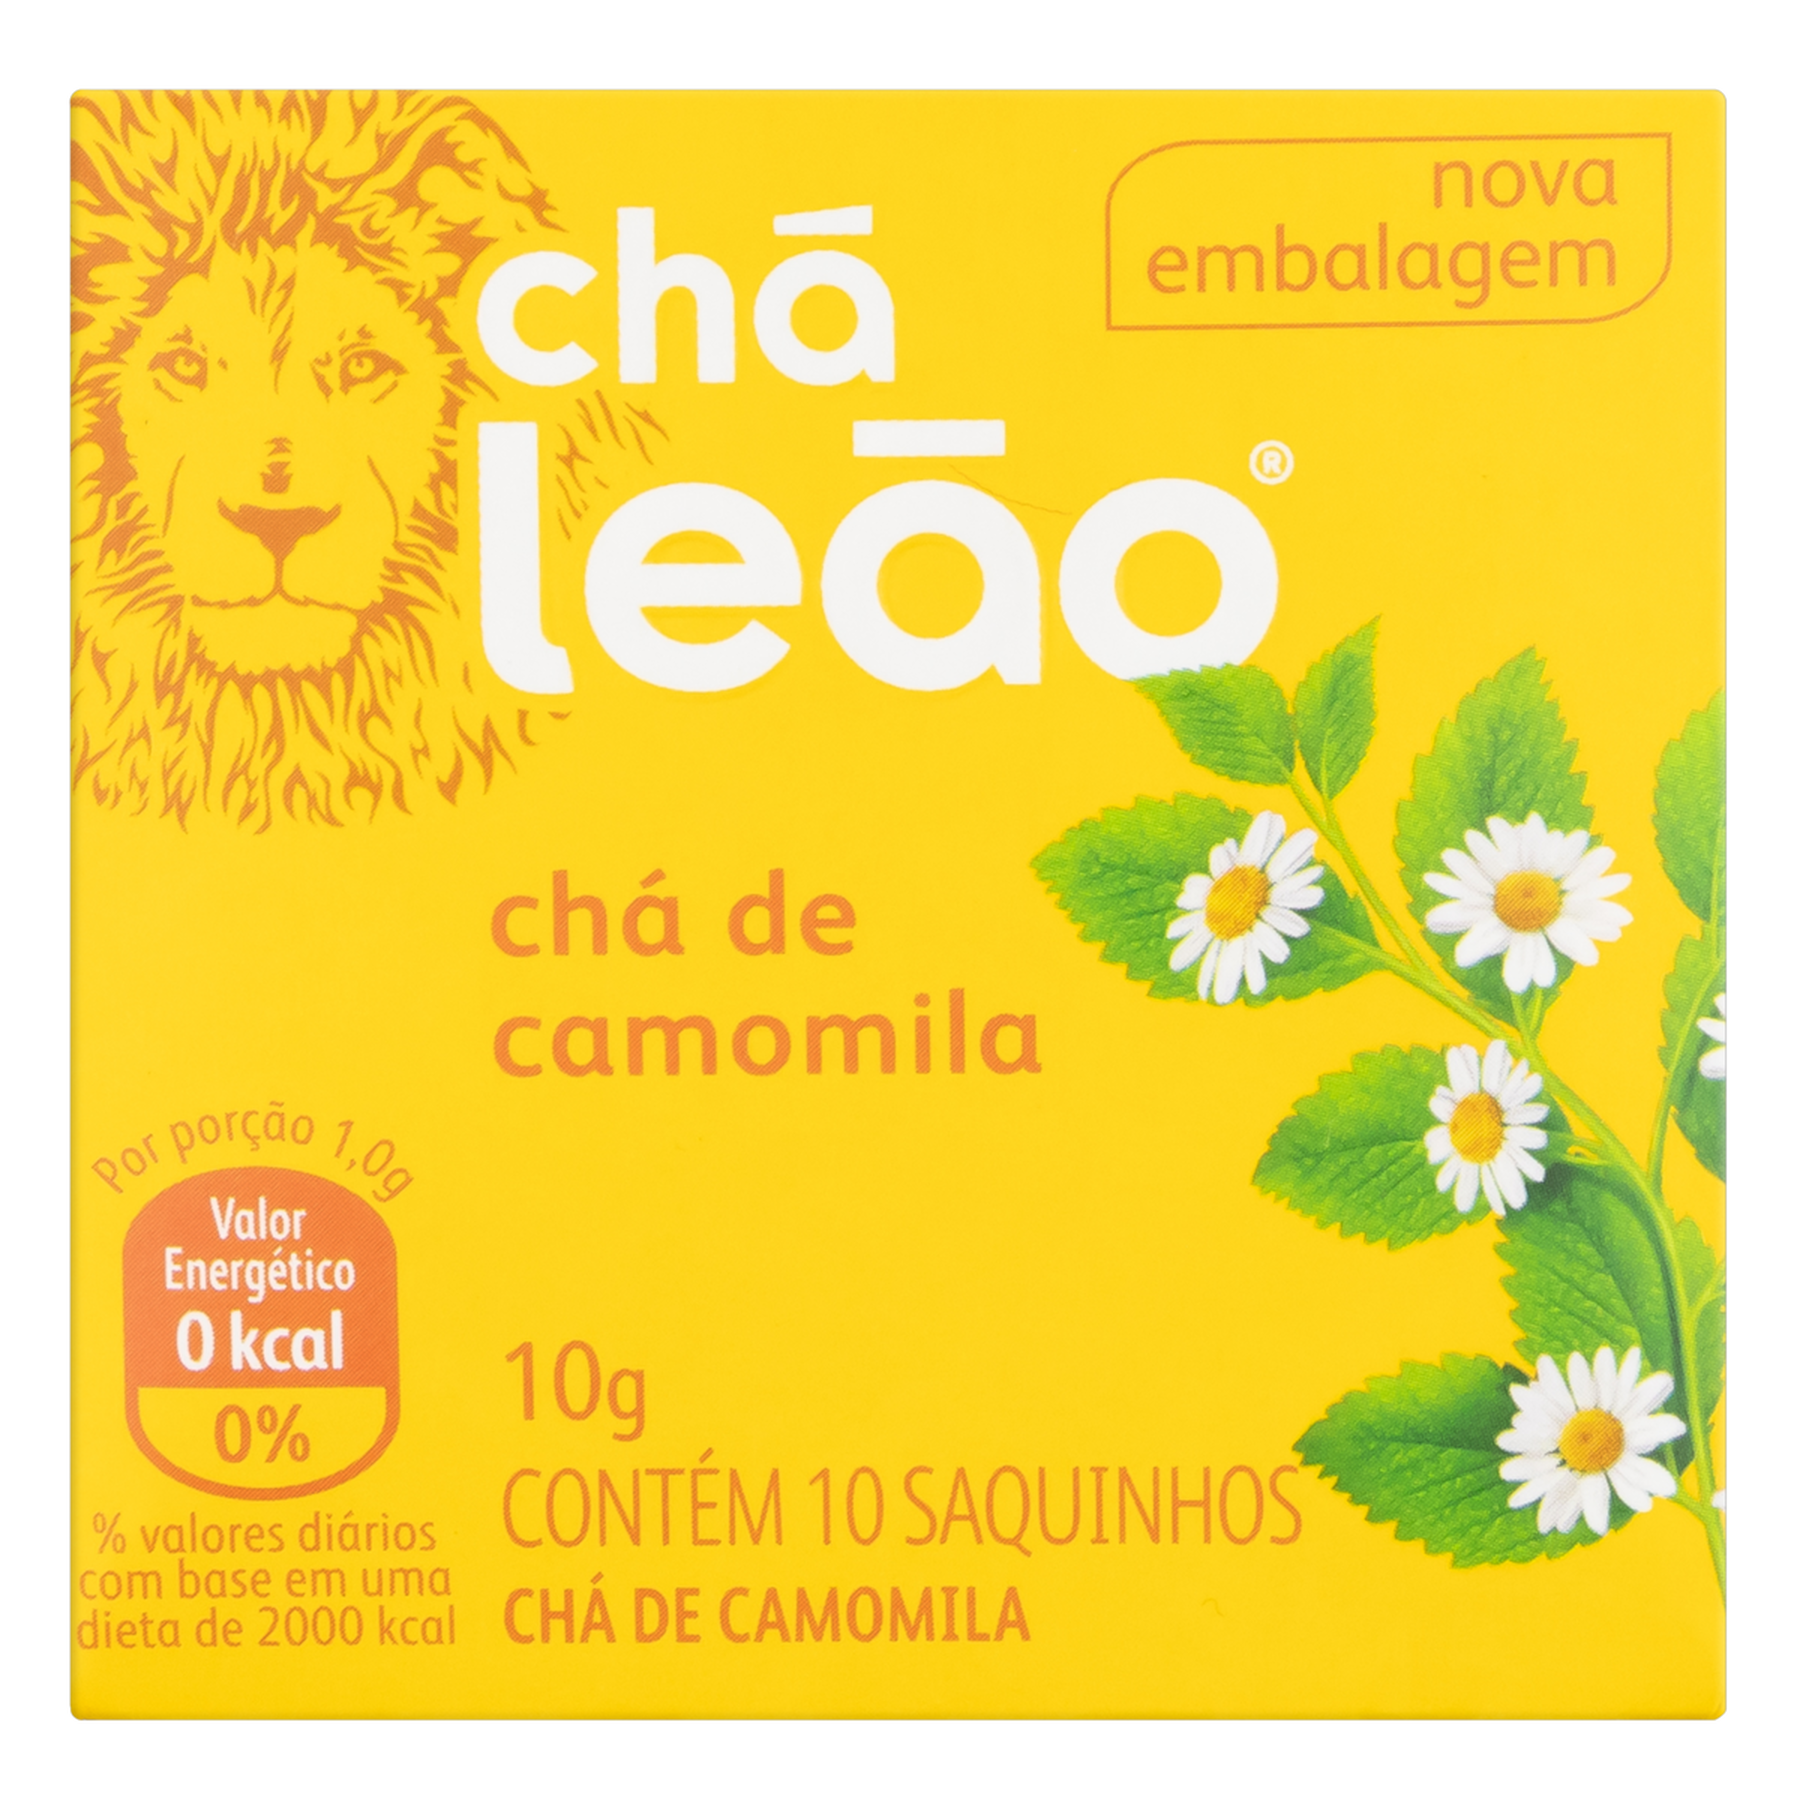 Chá Camomila Chá Leão Caixa 10g 10 Unidades